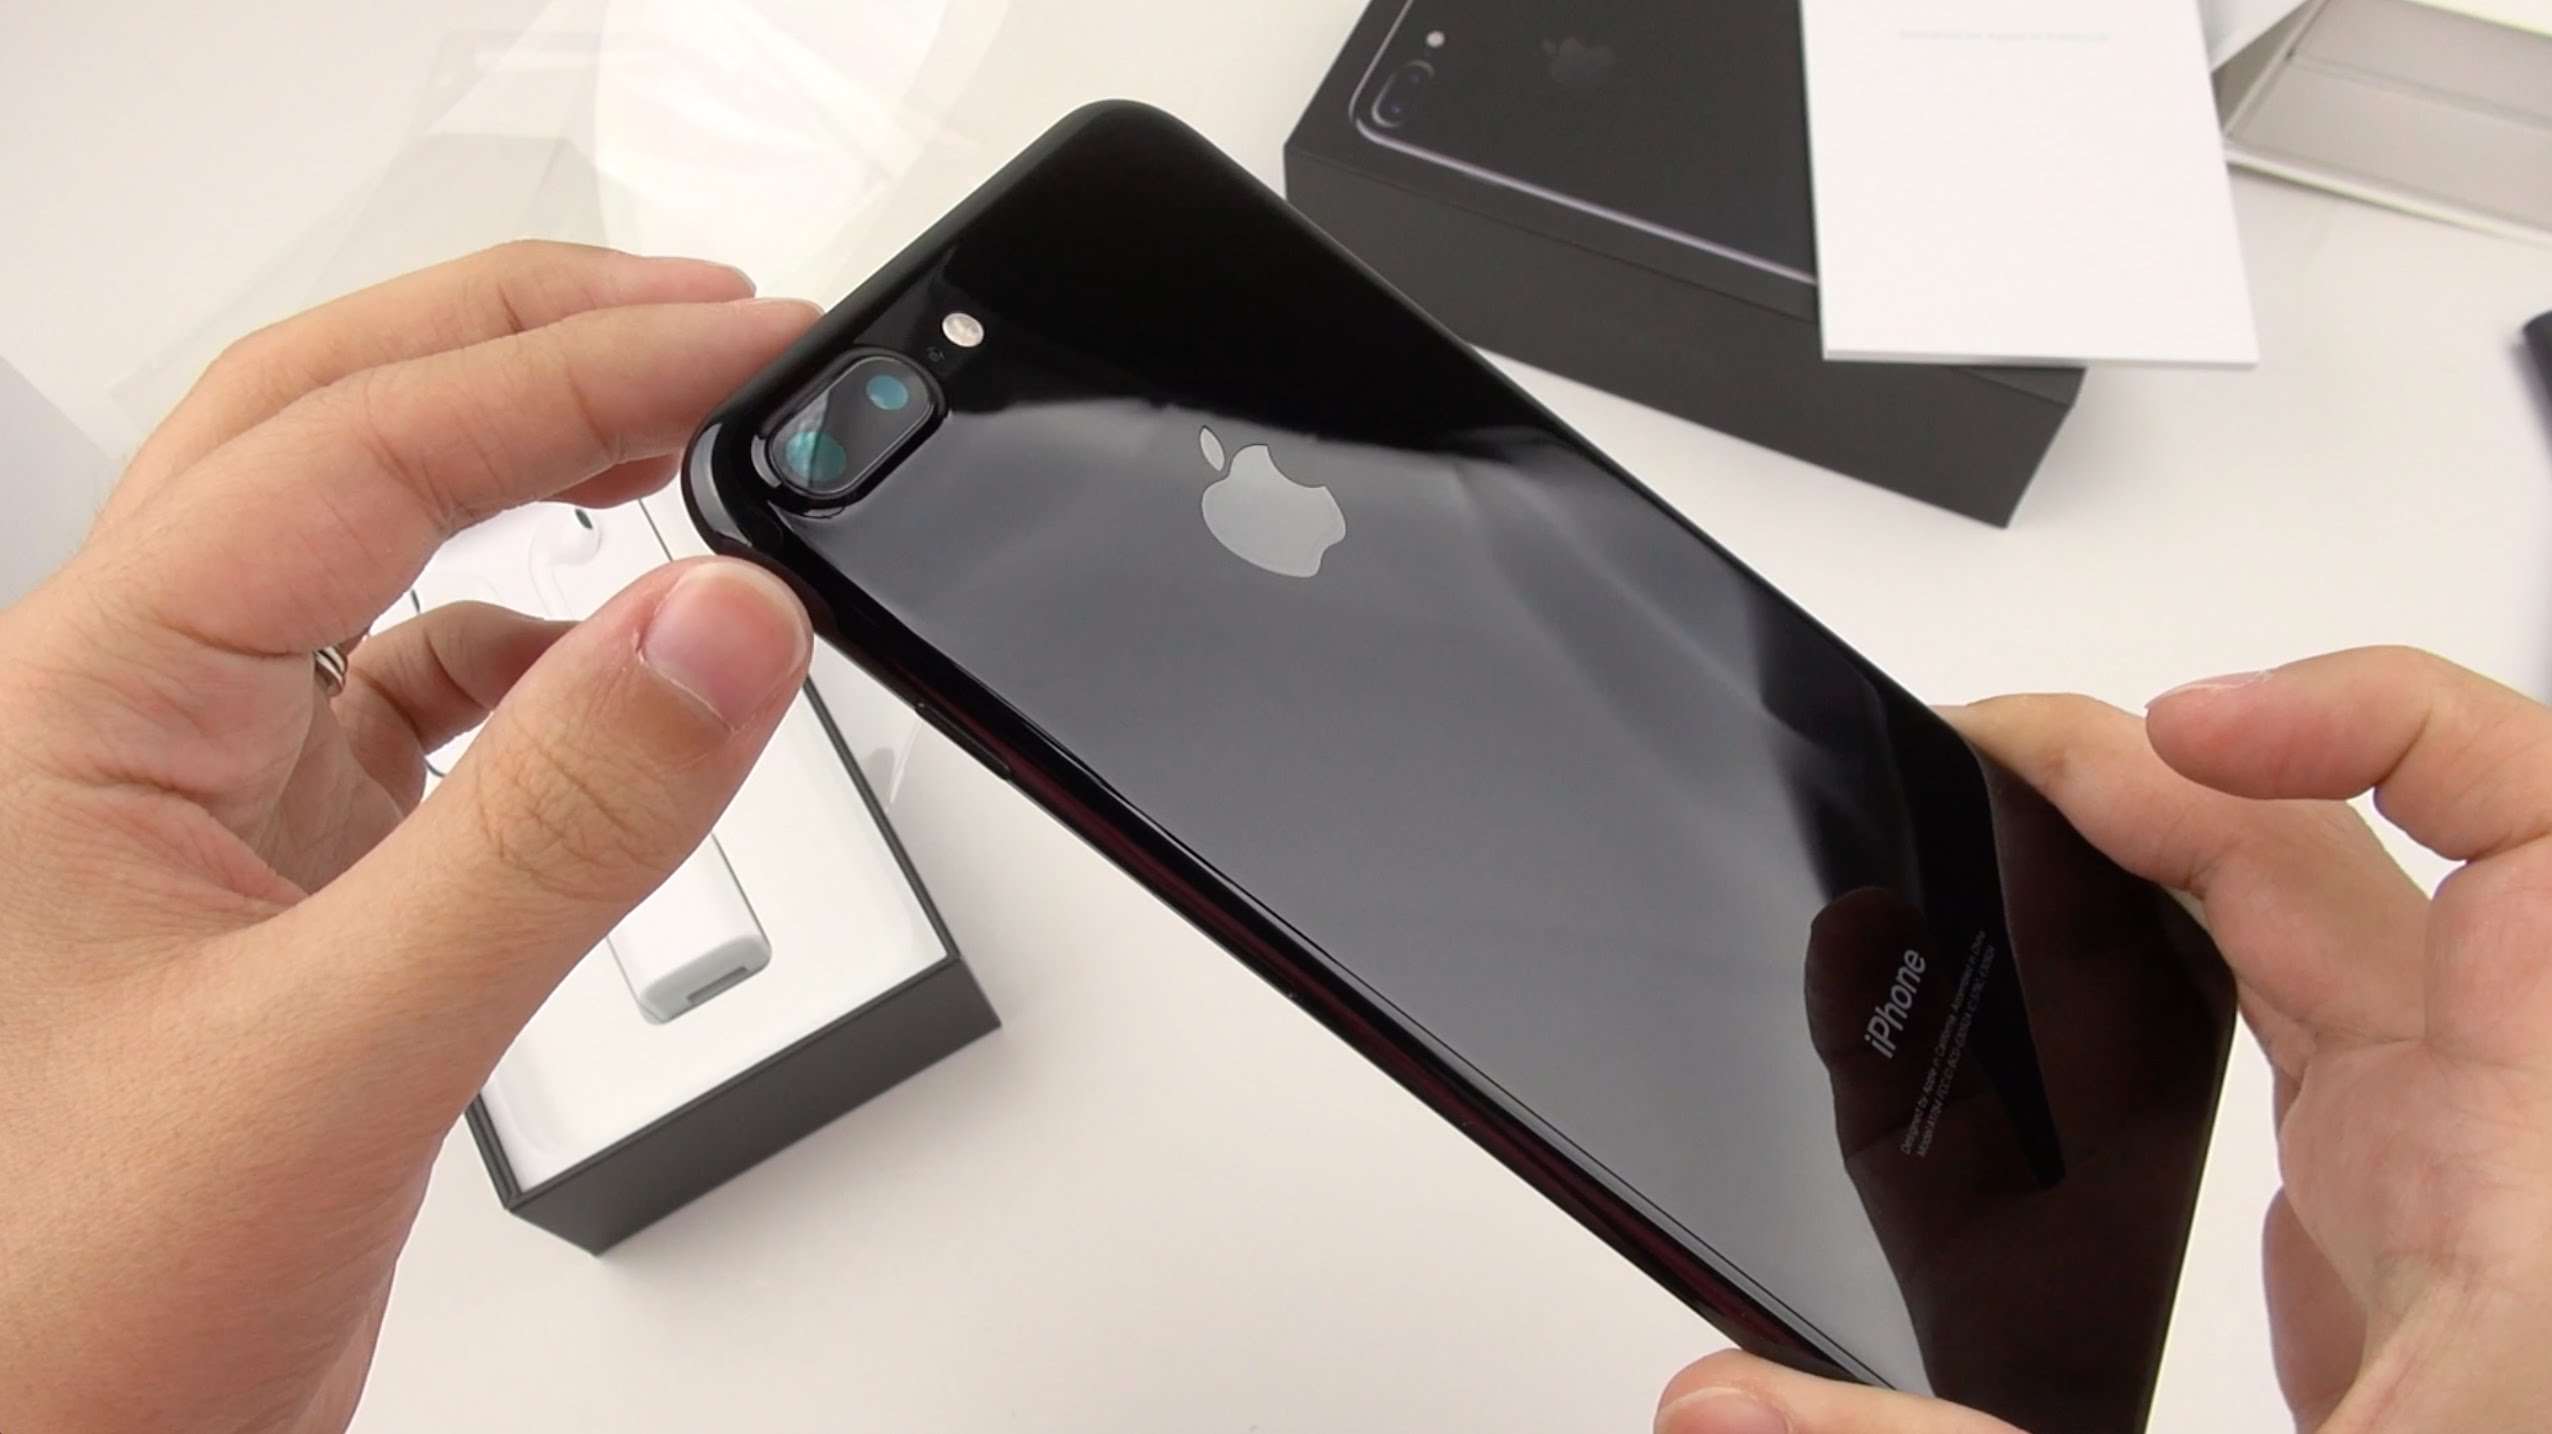 Cuộc sống số - iPhone 7 Plus Jet Black sẽ được giao hàng sớm trước 2 tuần